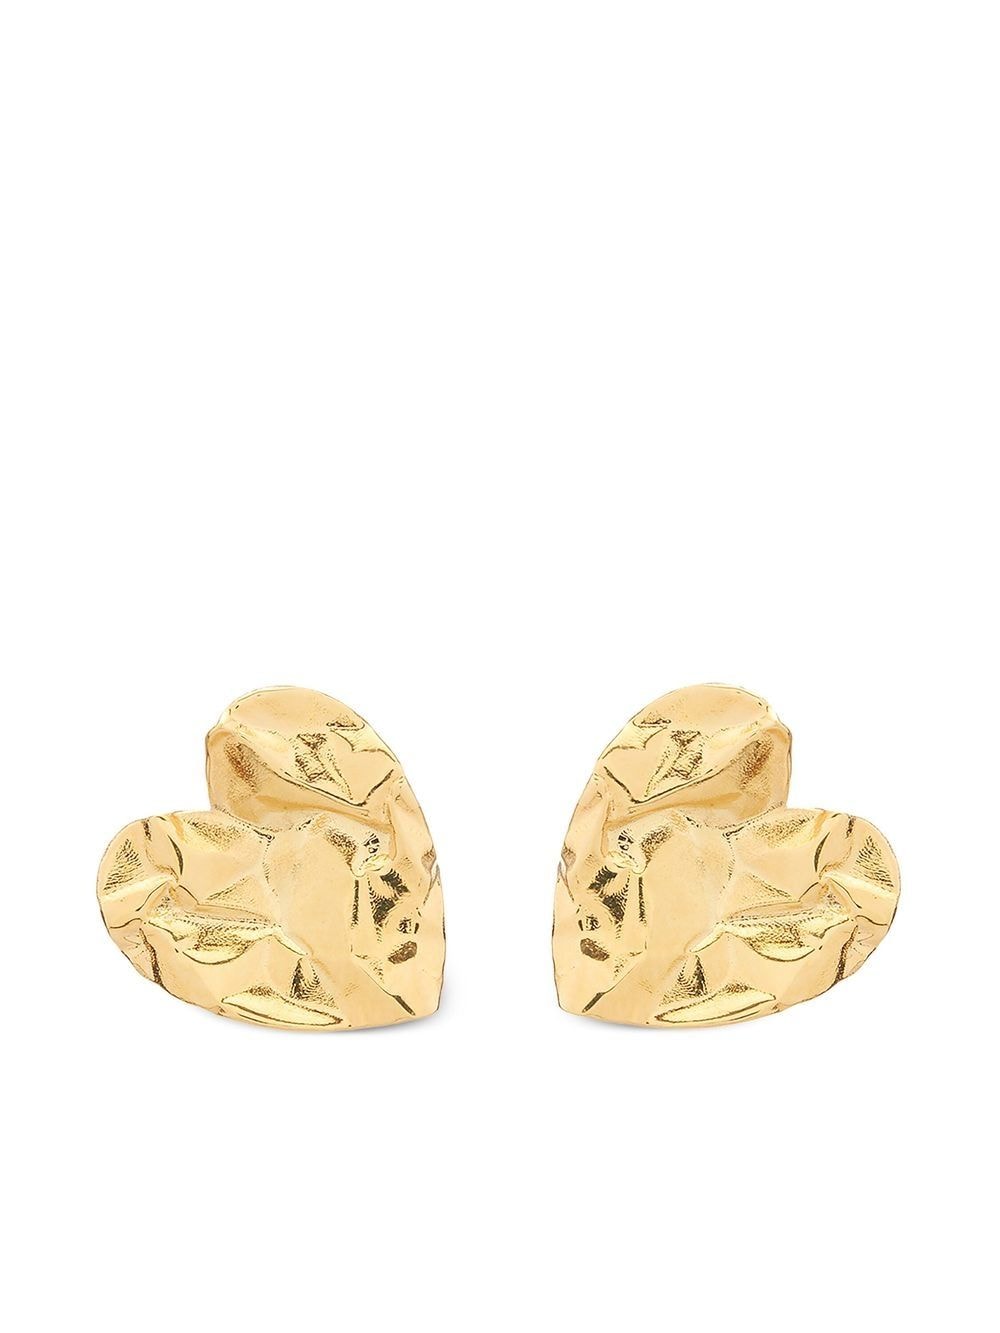 Women's Louis Vuitton Heart shaped Earrings